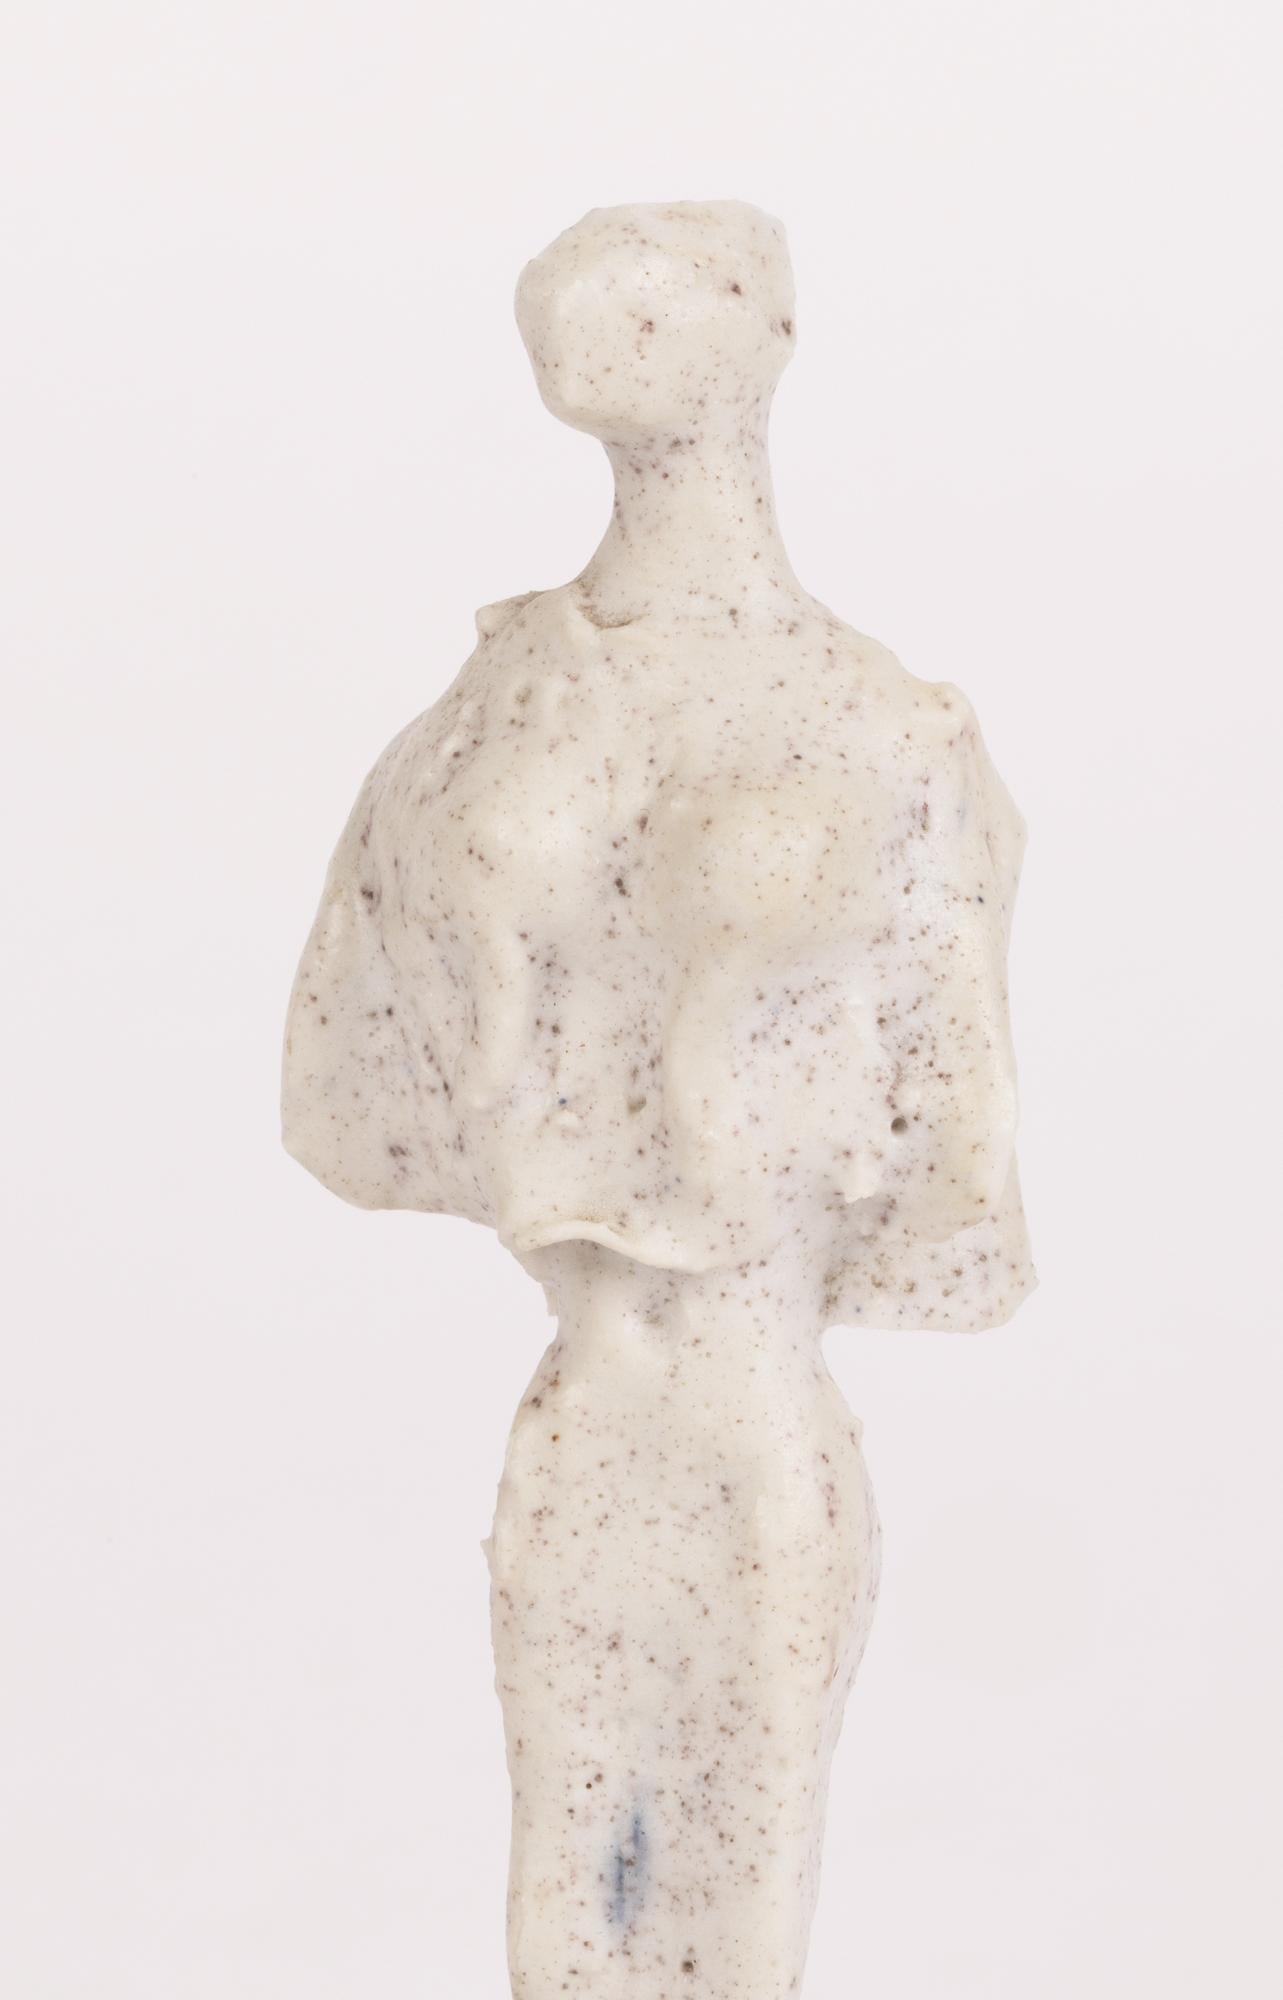 Eine sehr schöne Skulptur einer Dame aus der Mitte des Jahrhunderts von dem bekannten Töpfer Adam Dworski (Kroate, 1917-2011), die wahrscheinlich in seiner Anfangszeit in der Wye Pottery in Wales entstand. 

Adam Dworski gründete die Wye Pottery